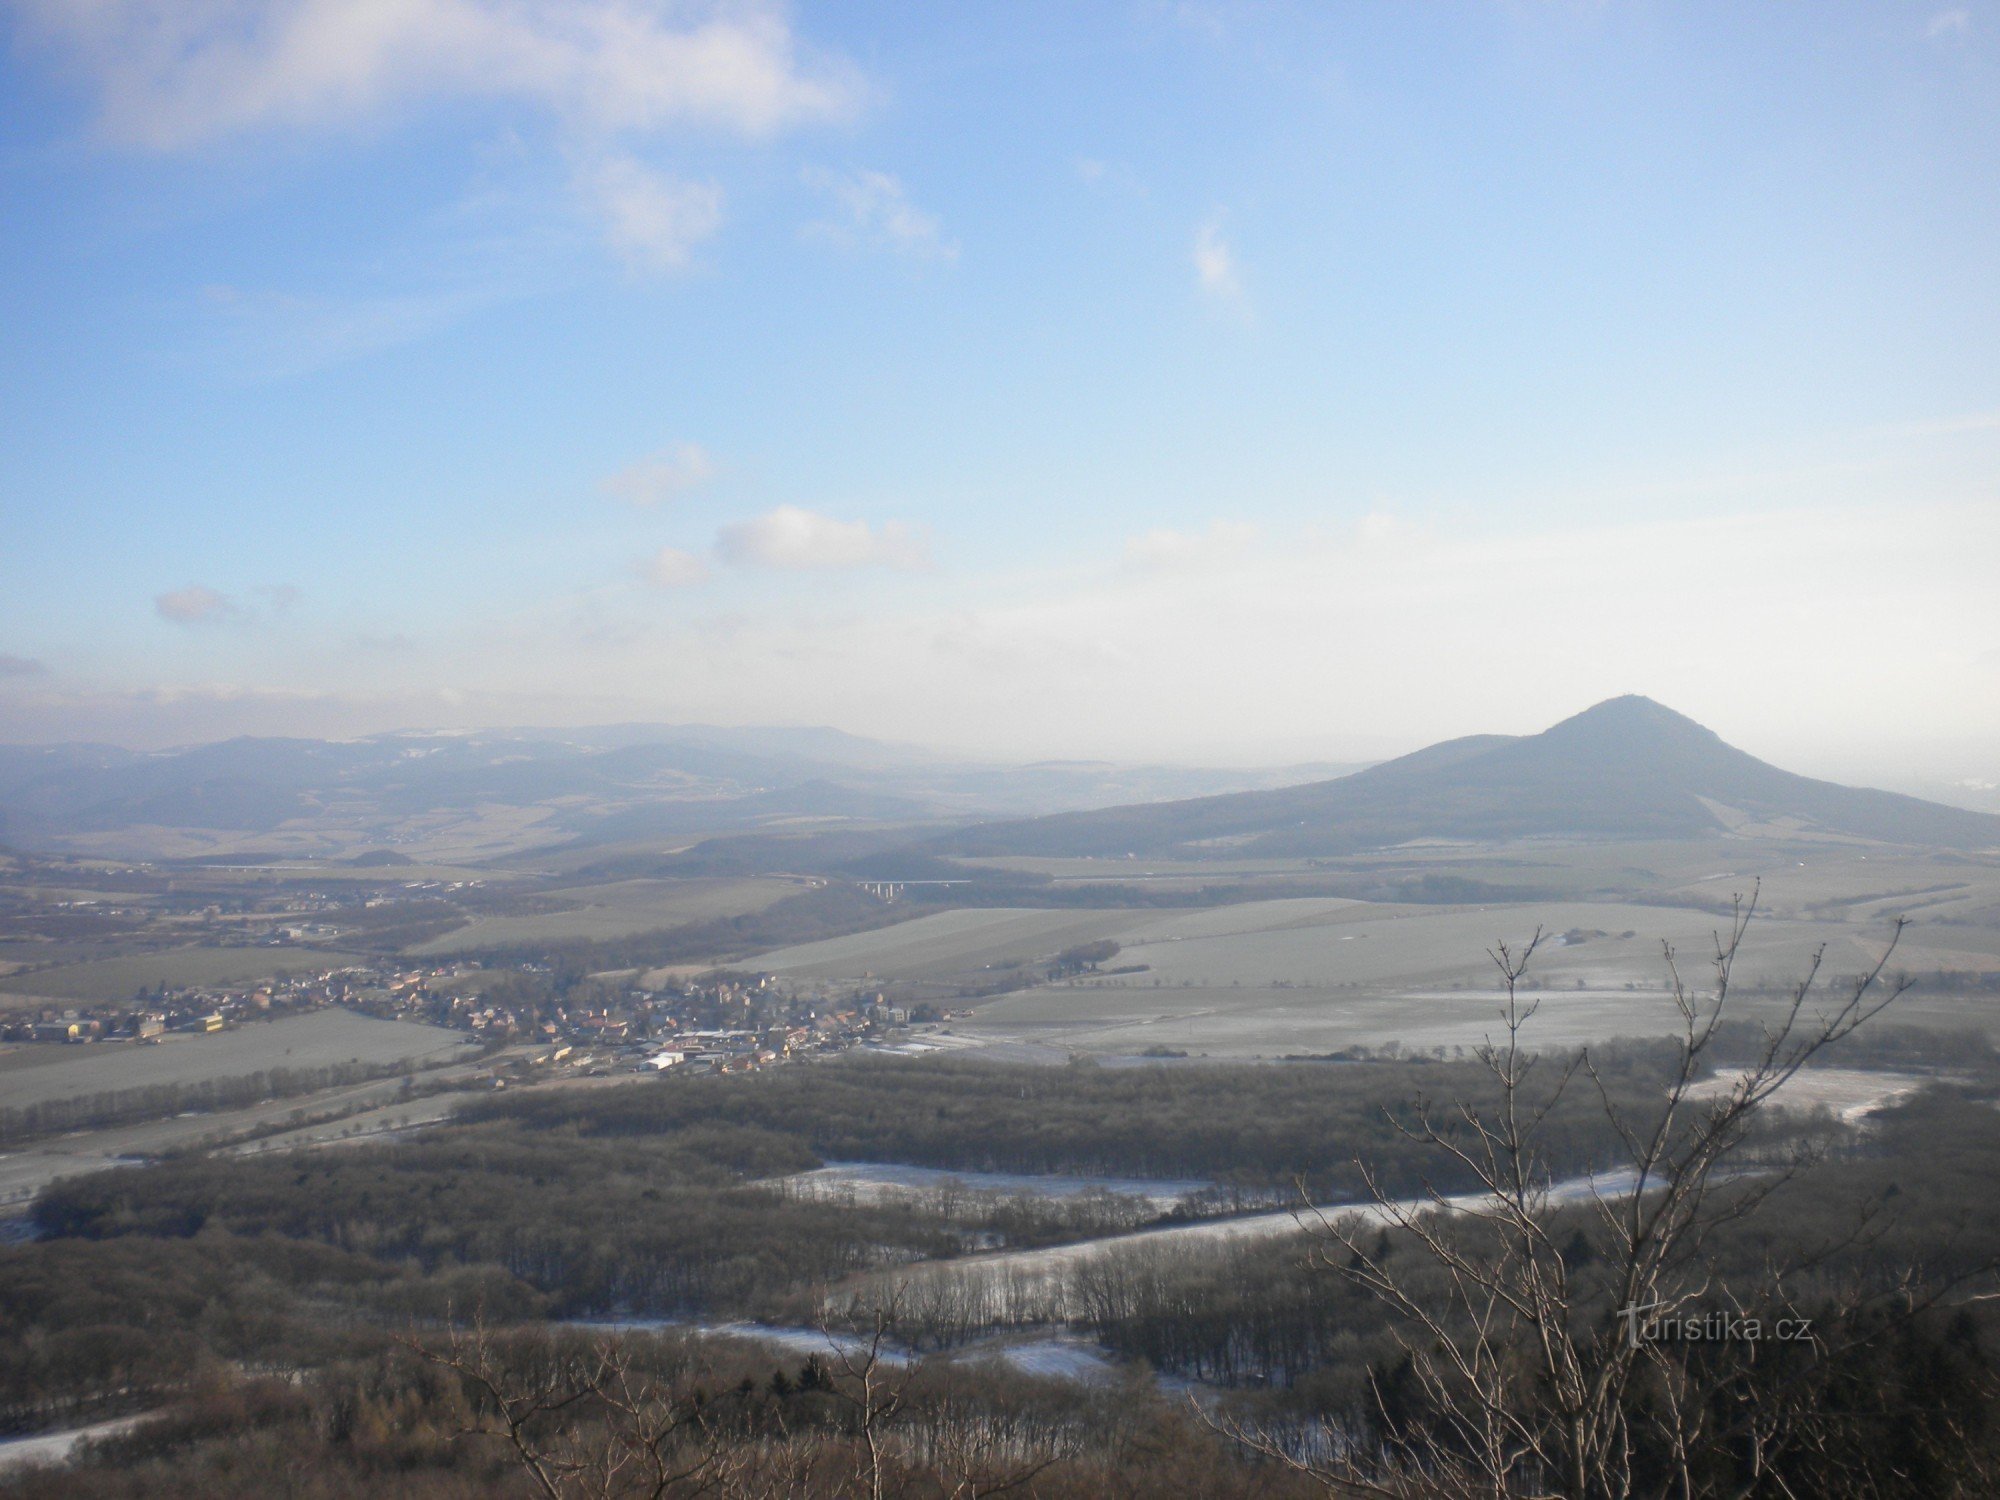 Vista de la región desde el castillo de Ostrý hacia el este. Colina Lovoš en primer plano.